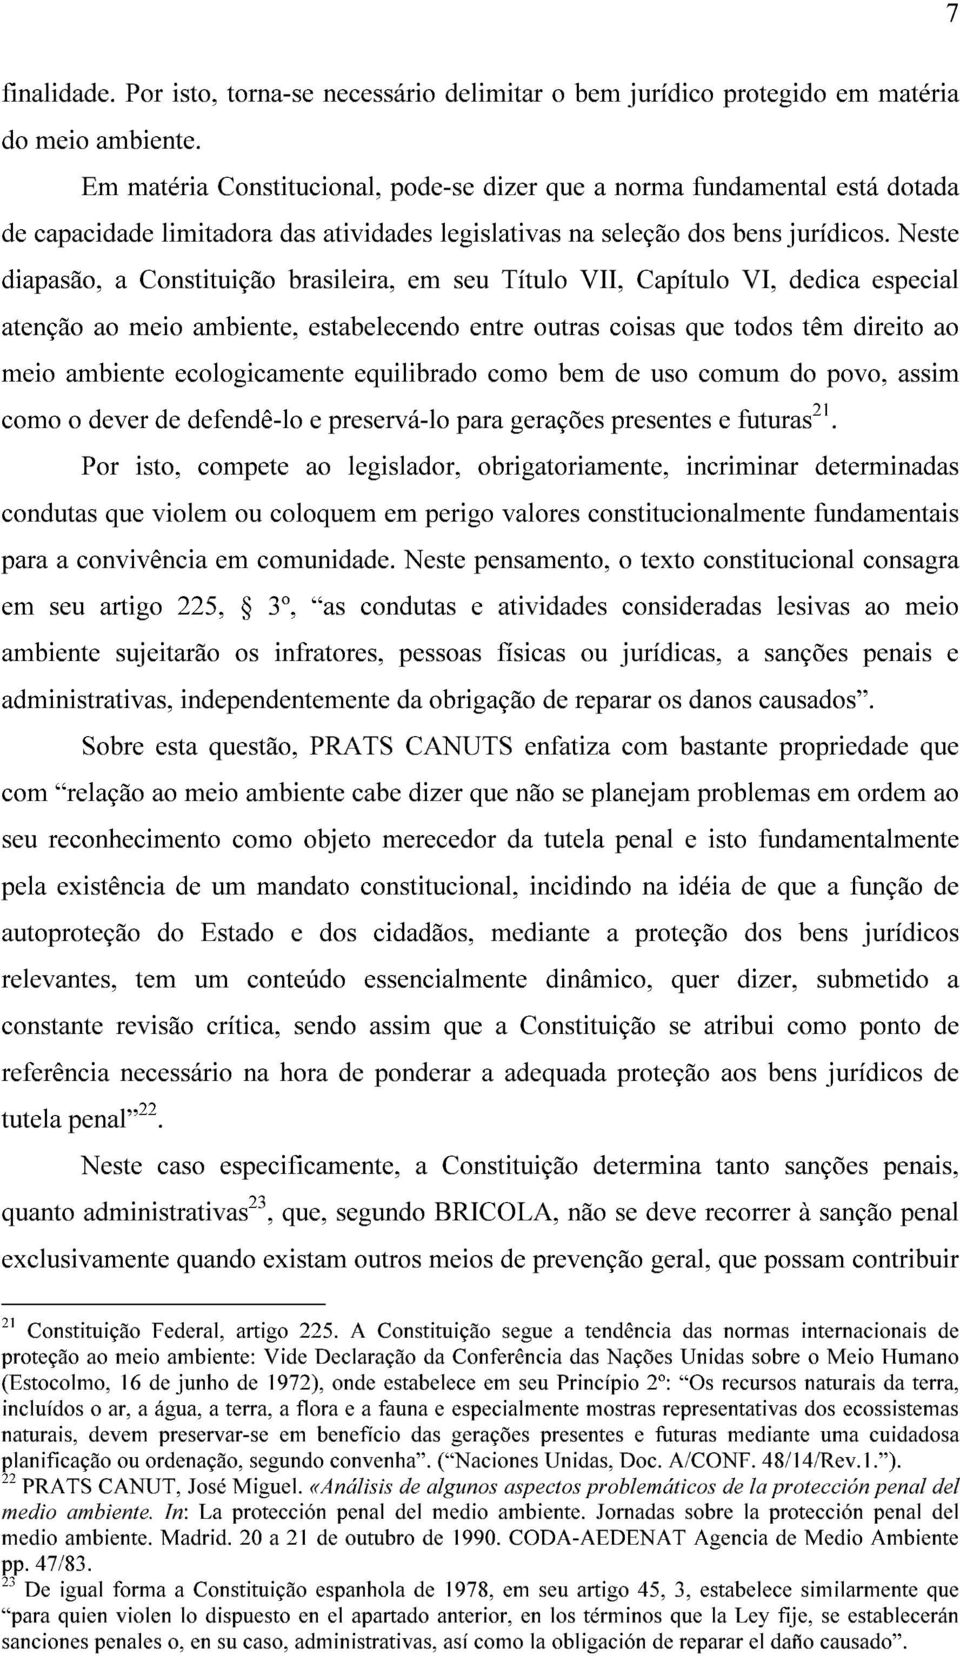 Neste diapasão, a Constituição brasileira, em seu Título VII, Capítulo VI, dedica especial atenção ao meio ambiente, estabelecendo entre outras coisas que todos têm direito ao meio ambiente